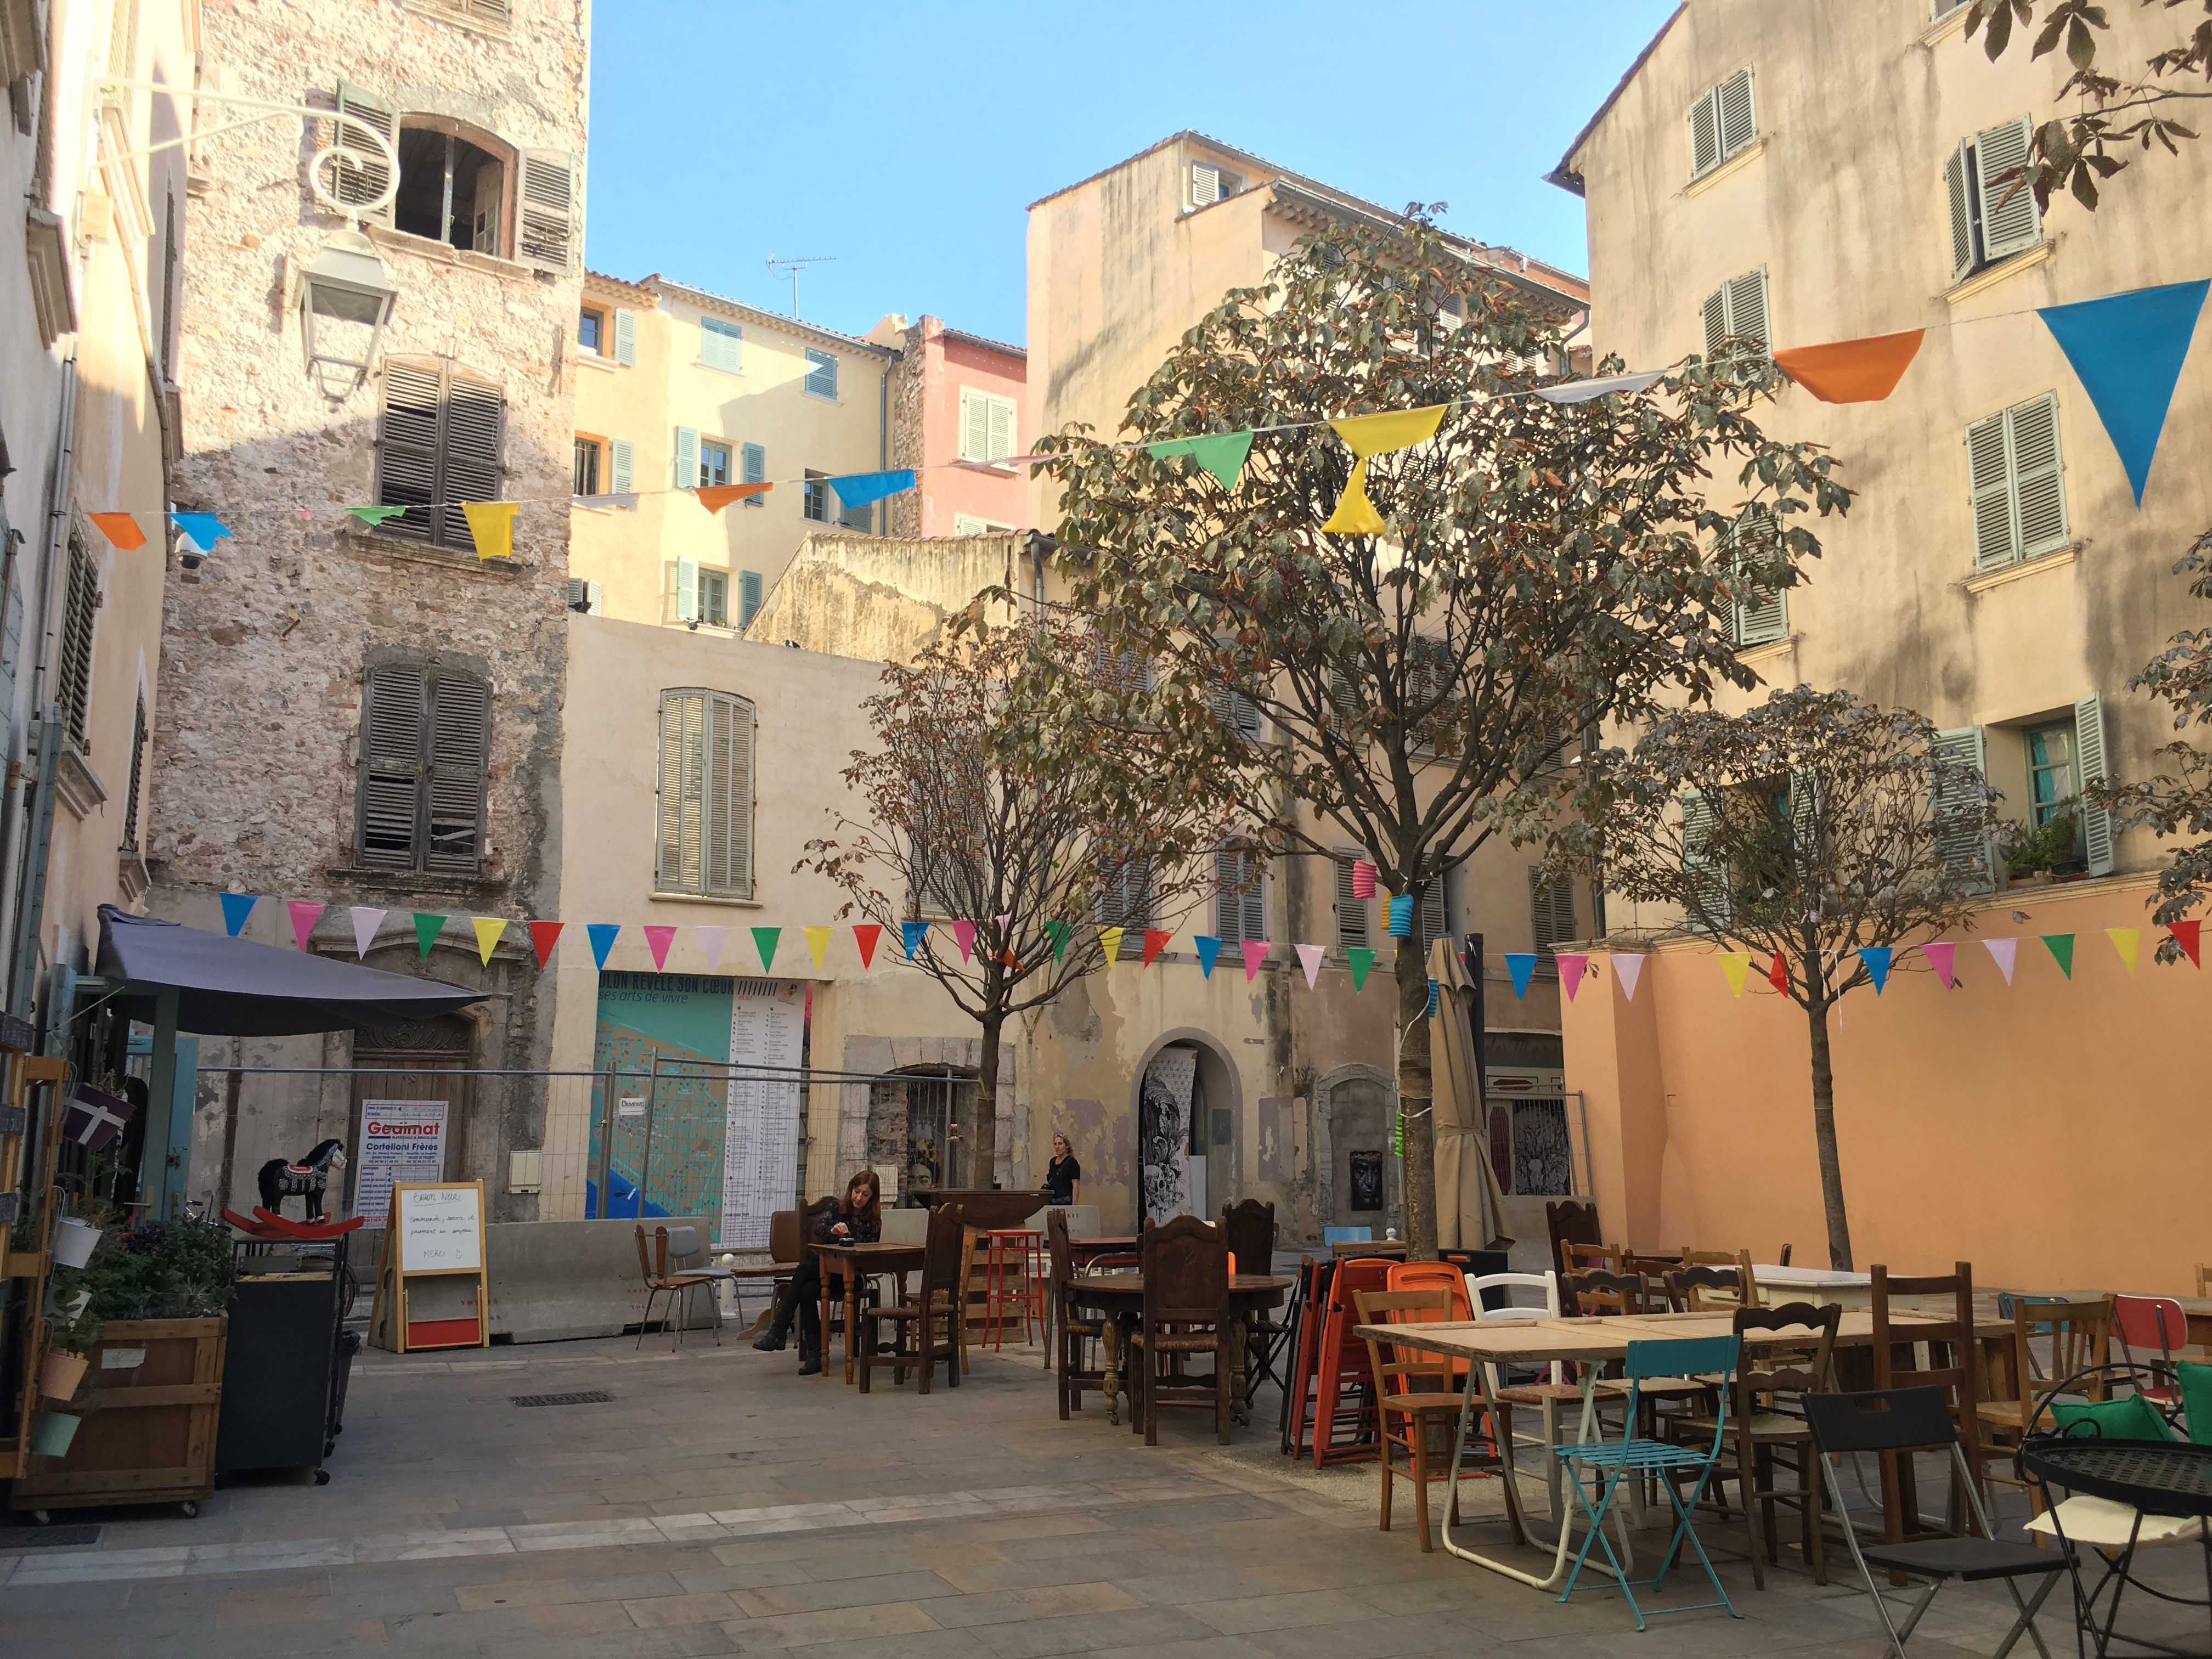 Les ruelles de la vieille ville de Toulon © TourMaG